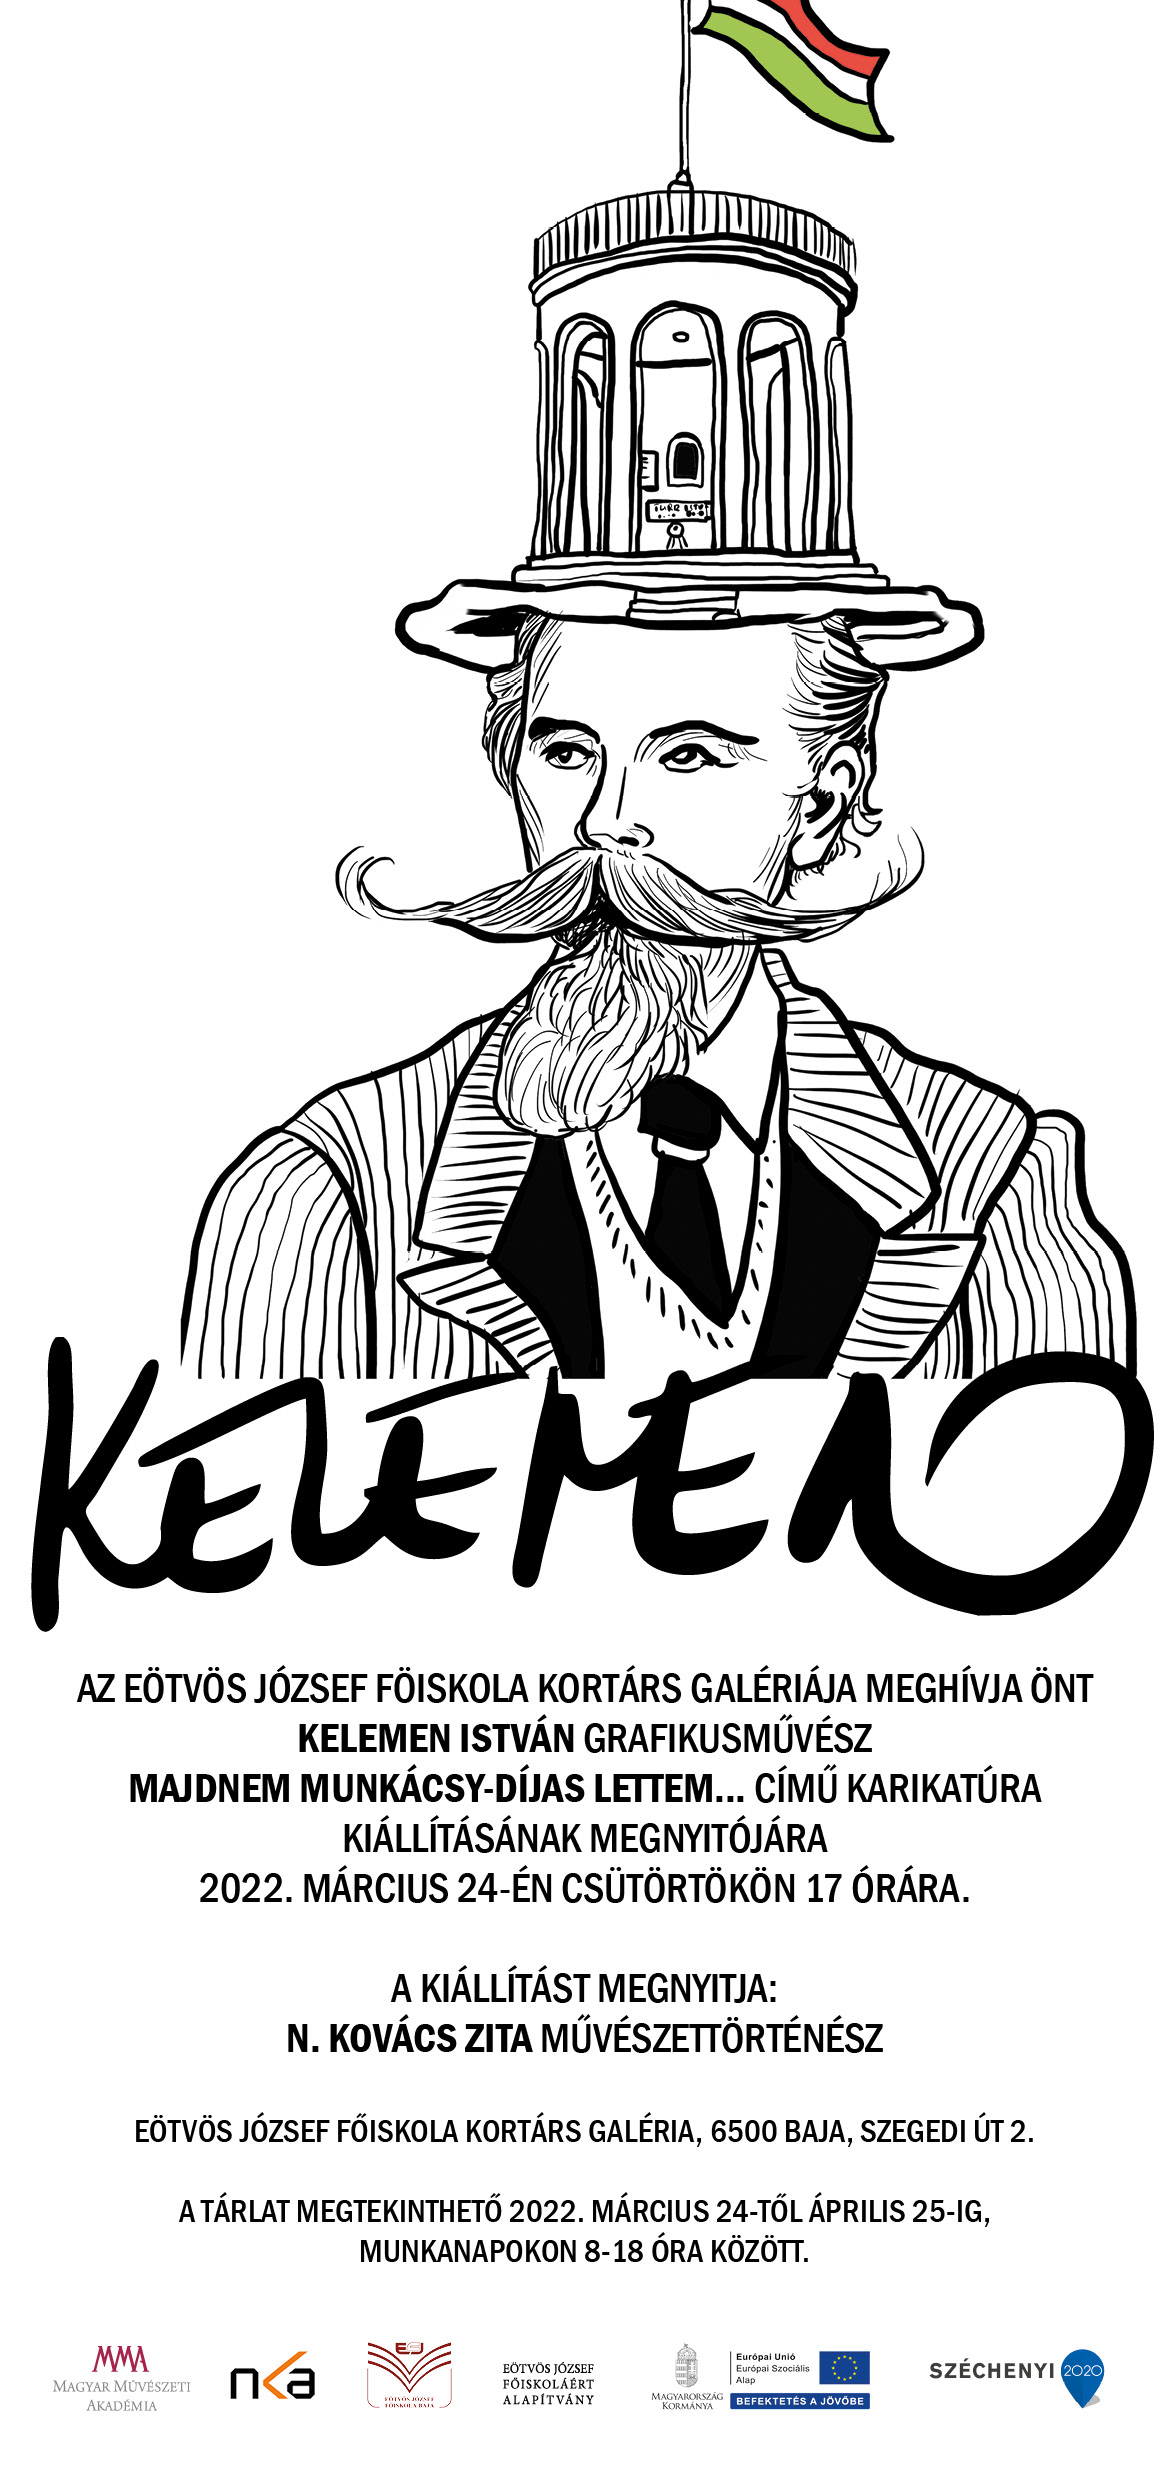 Meghívó Kelemen István grafikusművész karikatúra kiállítására